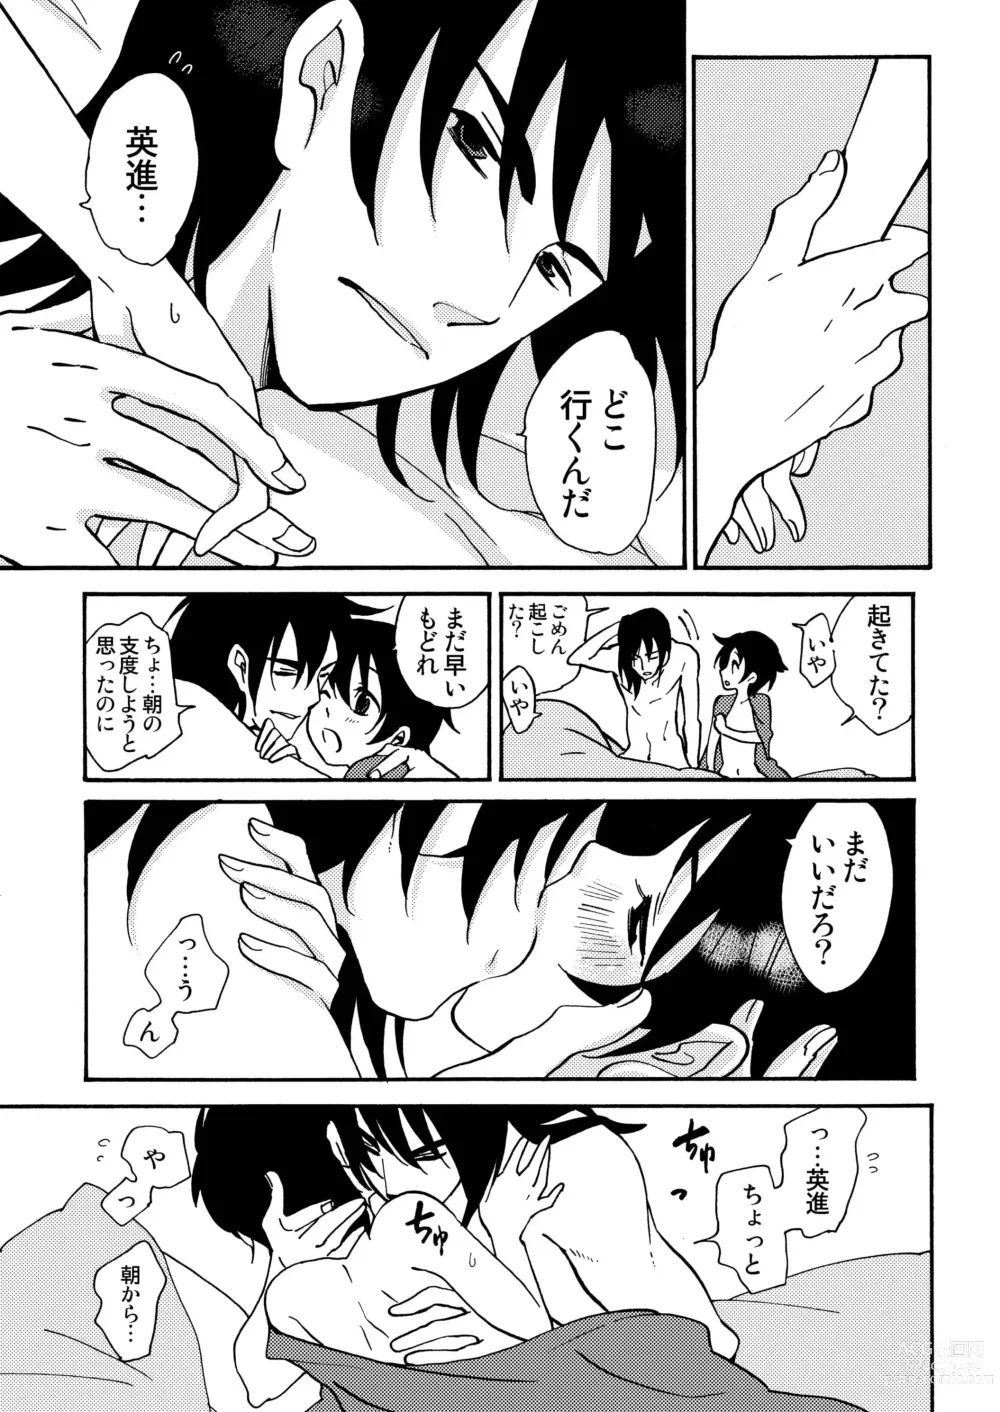 Page 68 of doujinshi Kizu